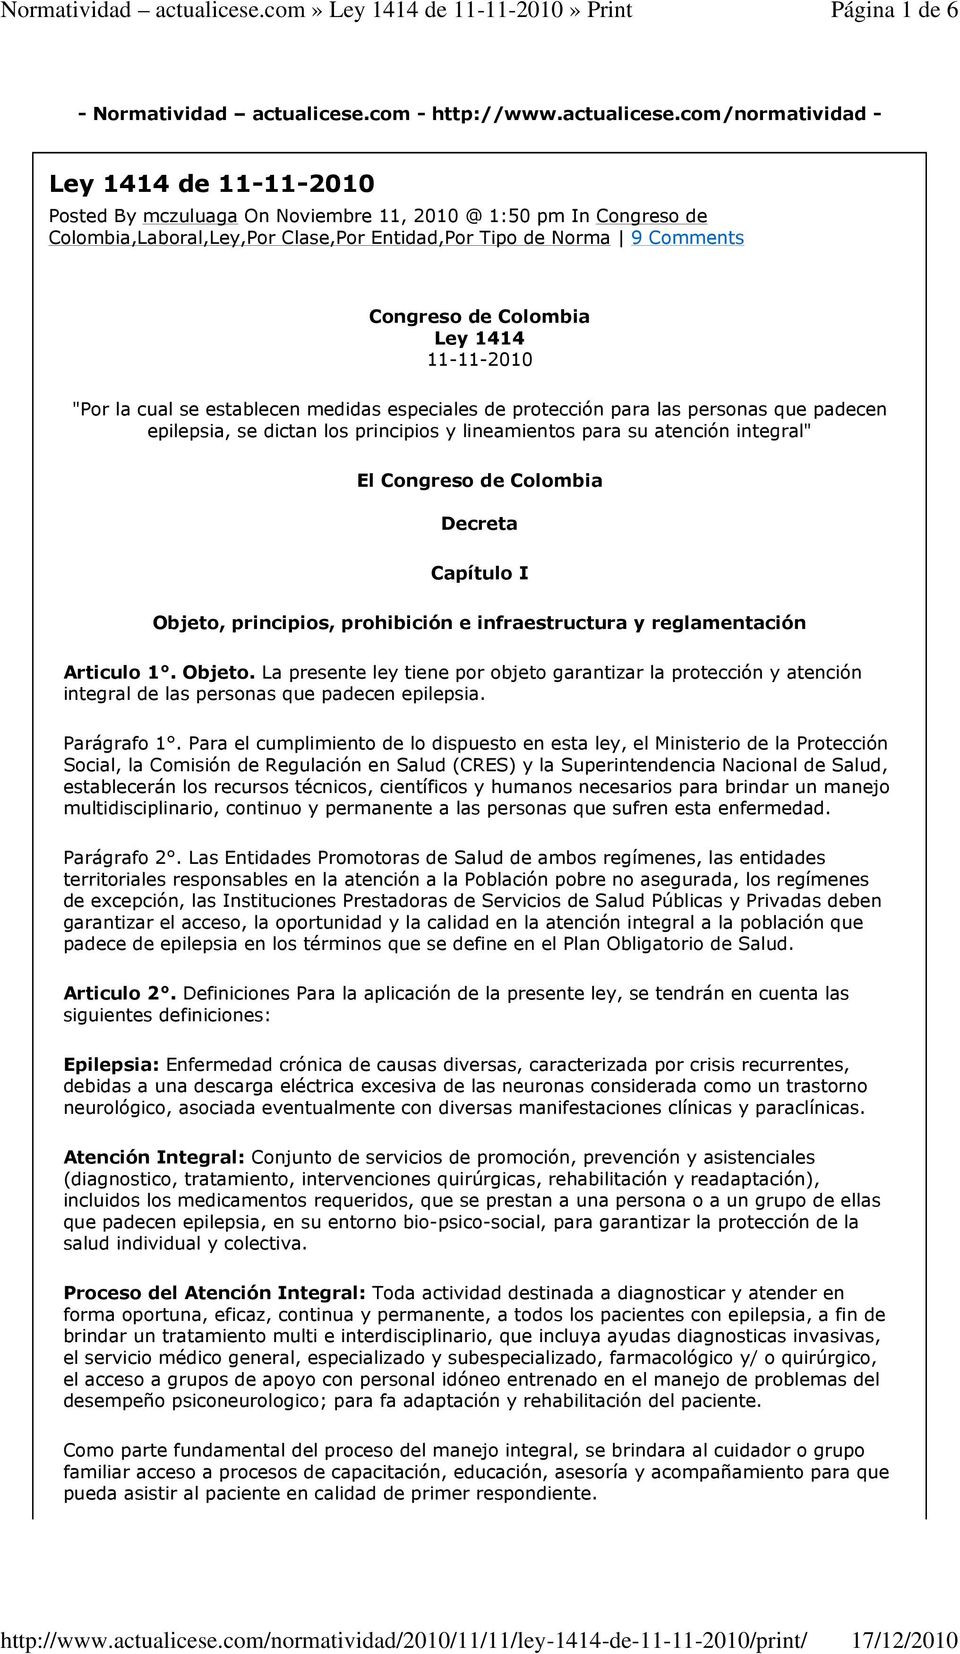 com/normatividad - Ley 1414 de 11-11-2010 Posted By mczuluaga On Noviembre 11, 2010 @ 1:50 pm In Congreso de Colombia,Laboral,Ley,Por Clase,Por Entidad,Por Tipo de Norma 9 Comments Congreso de